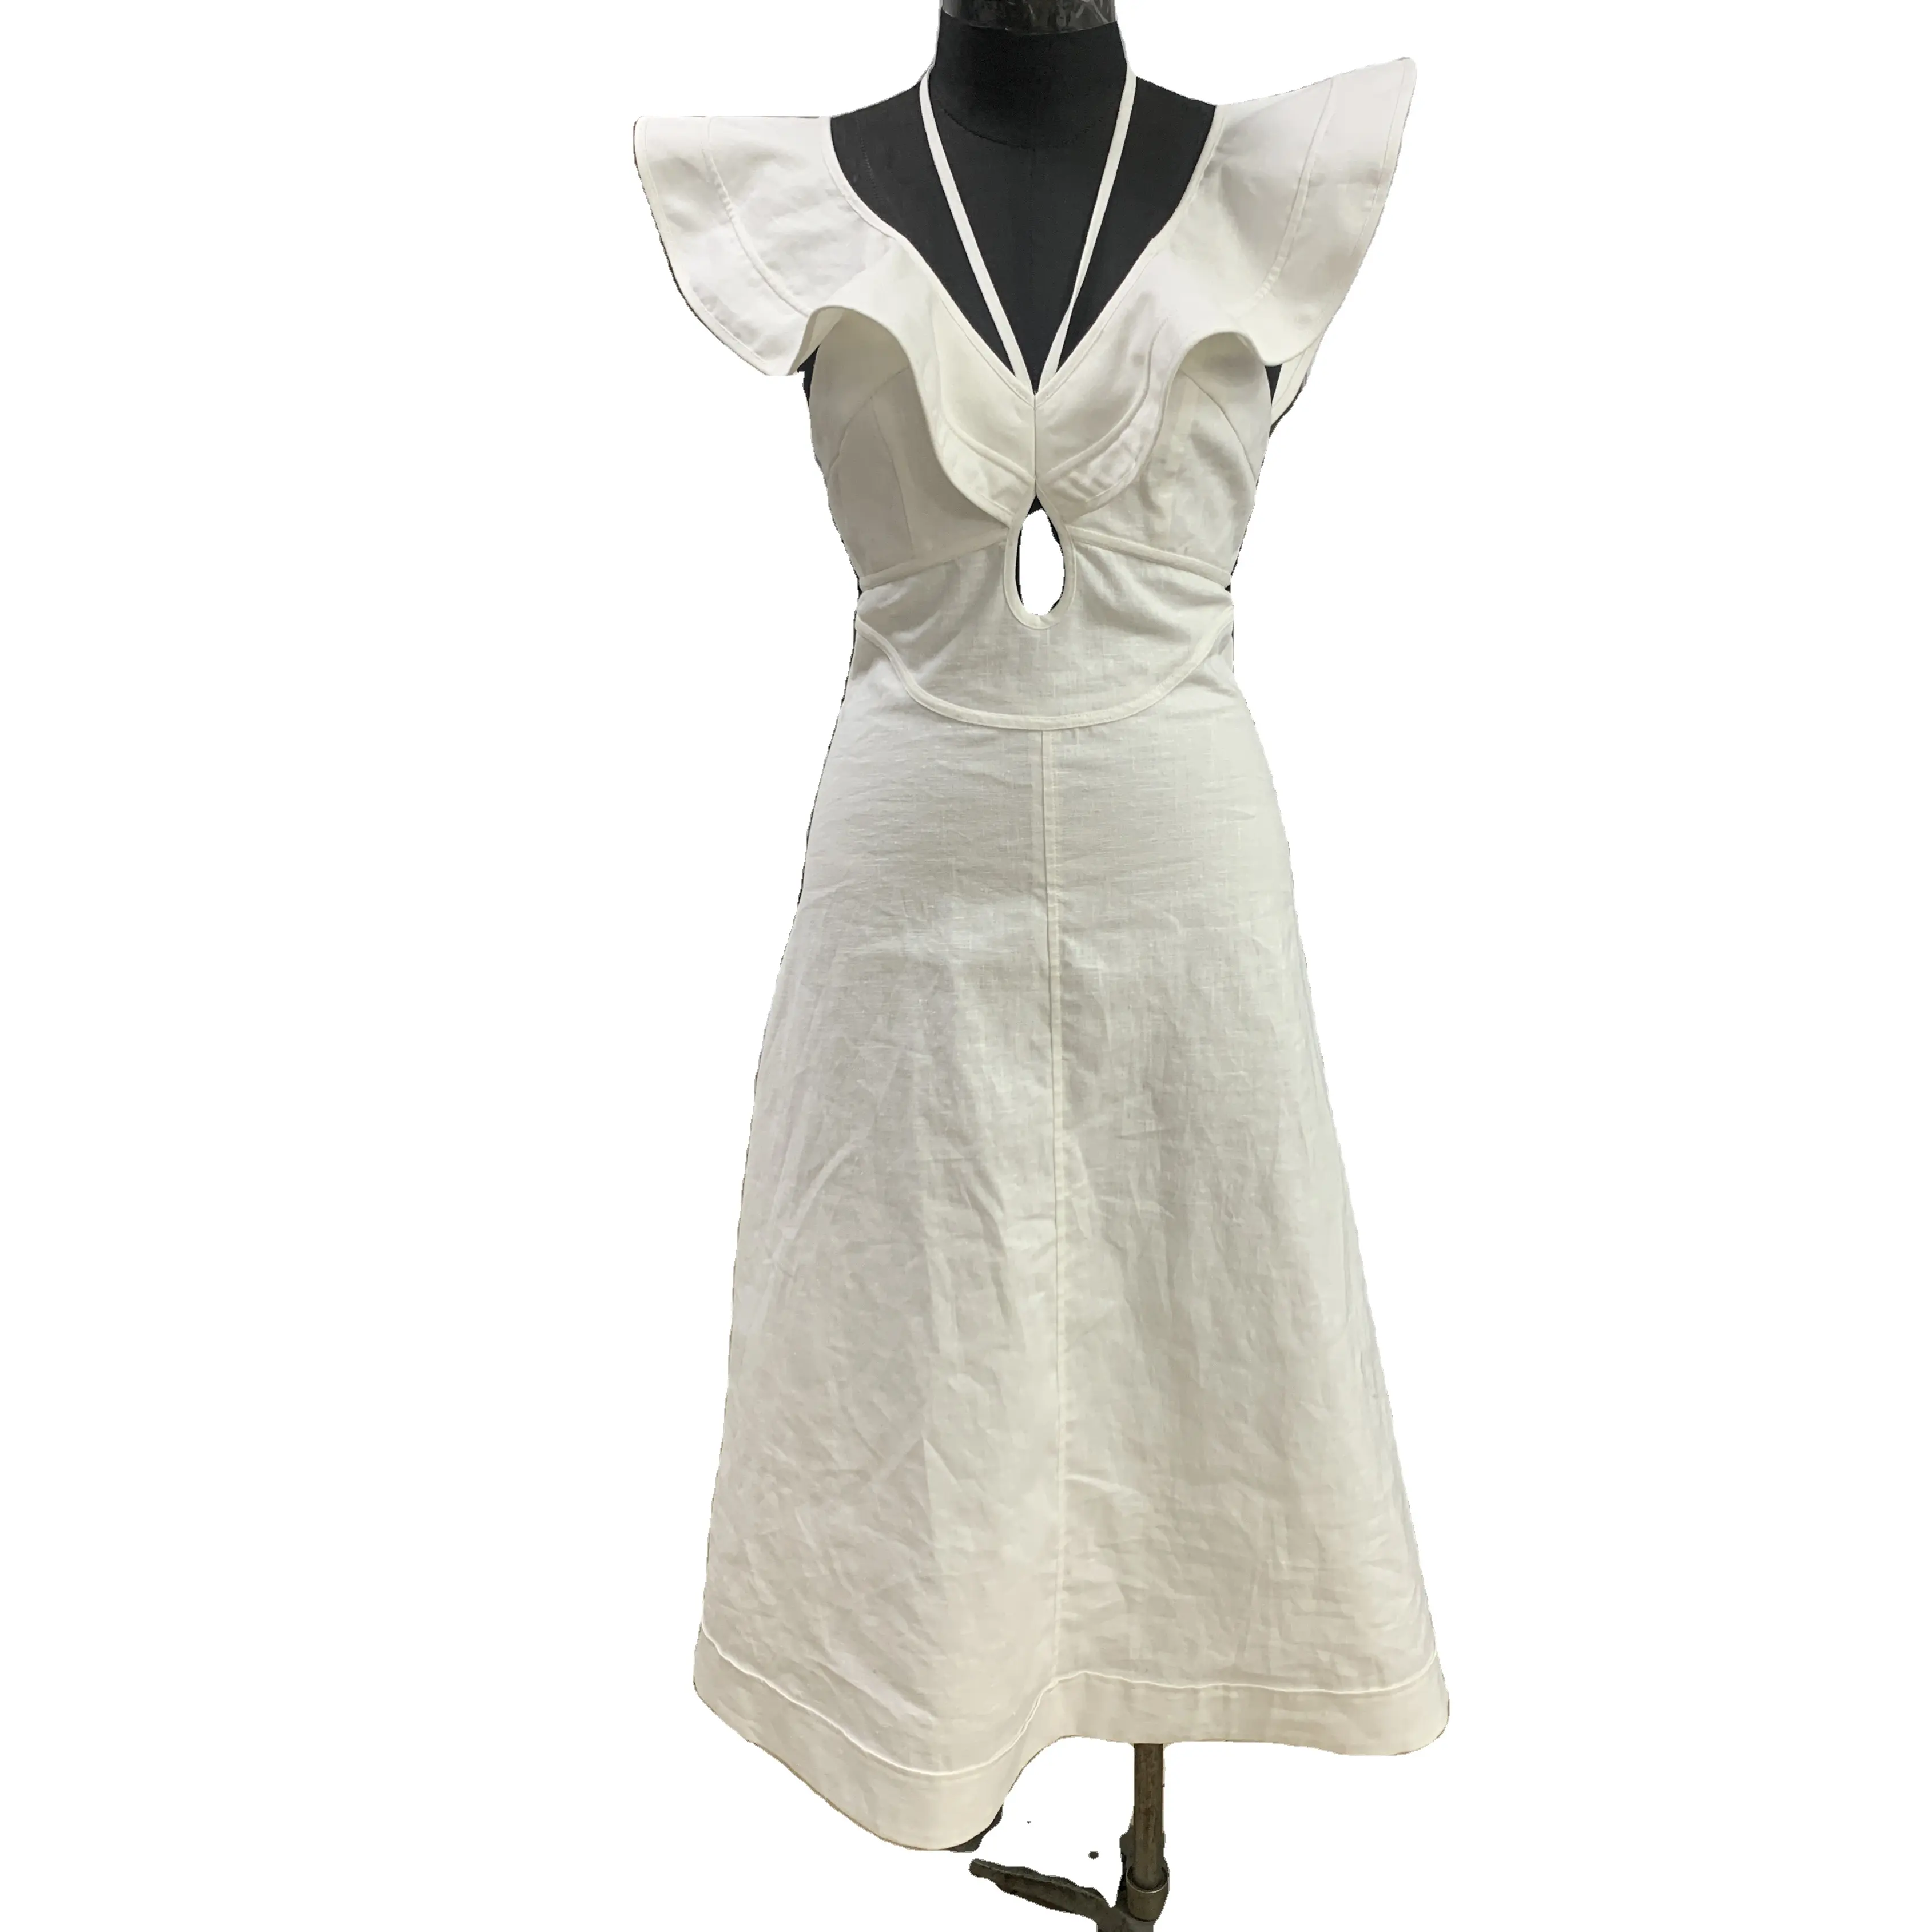 Nuevo diseño de moda para mujer, vestido Midi con mangas flutter personalizadas y escote en V profundo, elegante vestido largo blanco de lino y algodón